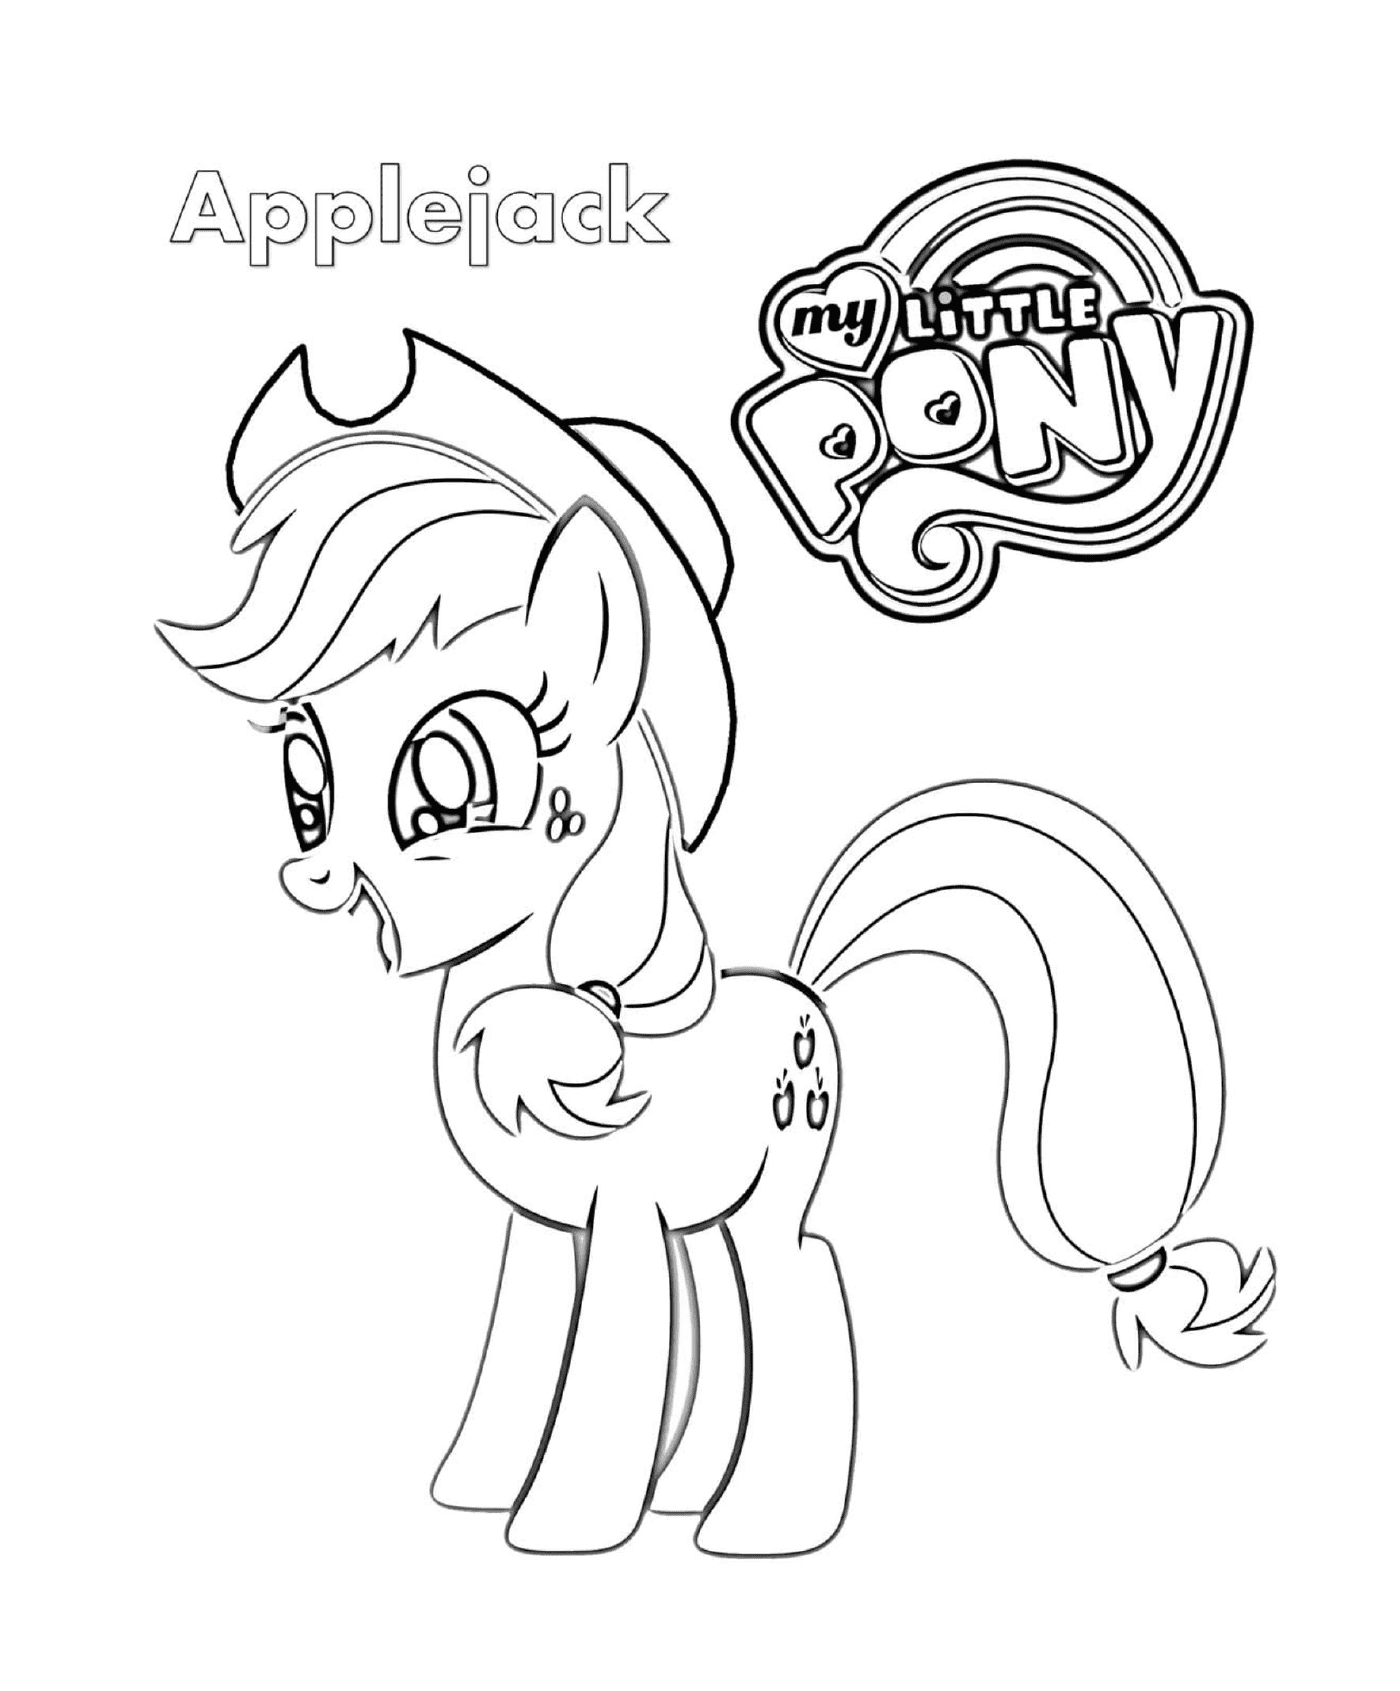  Applejack, un bel pony 